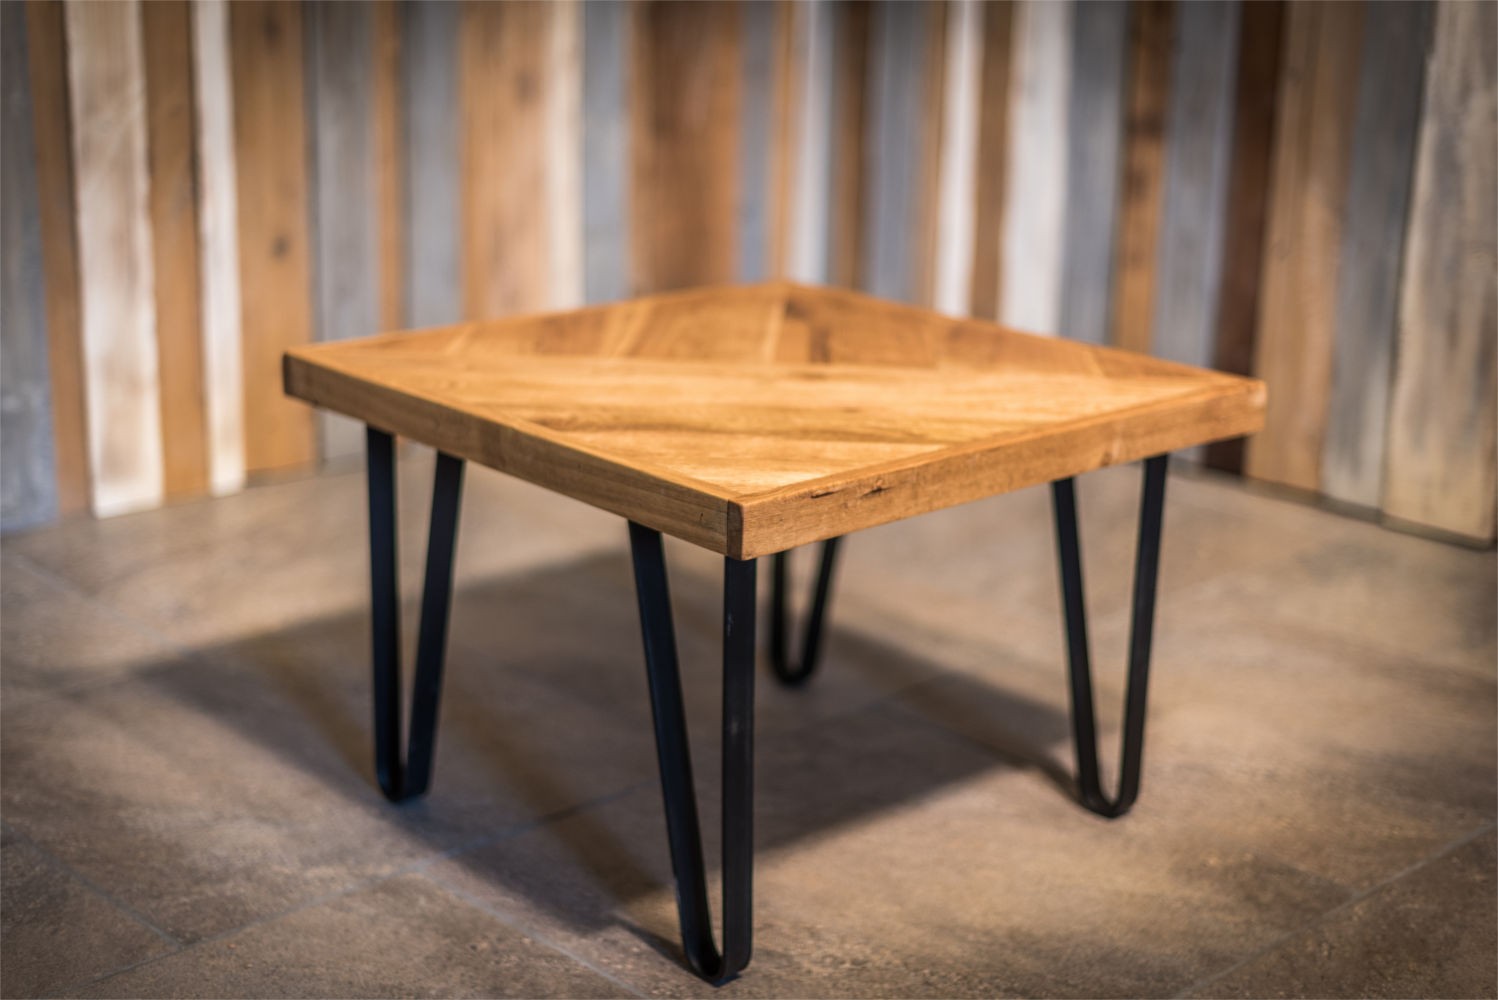 Solid Oak Coffee Table With Steel Legs Solid Oak Designs